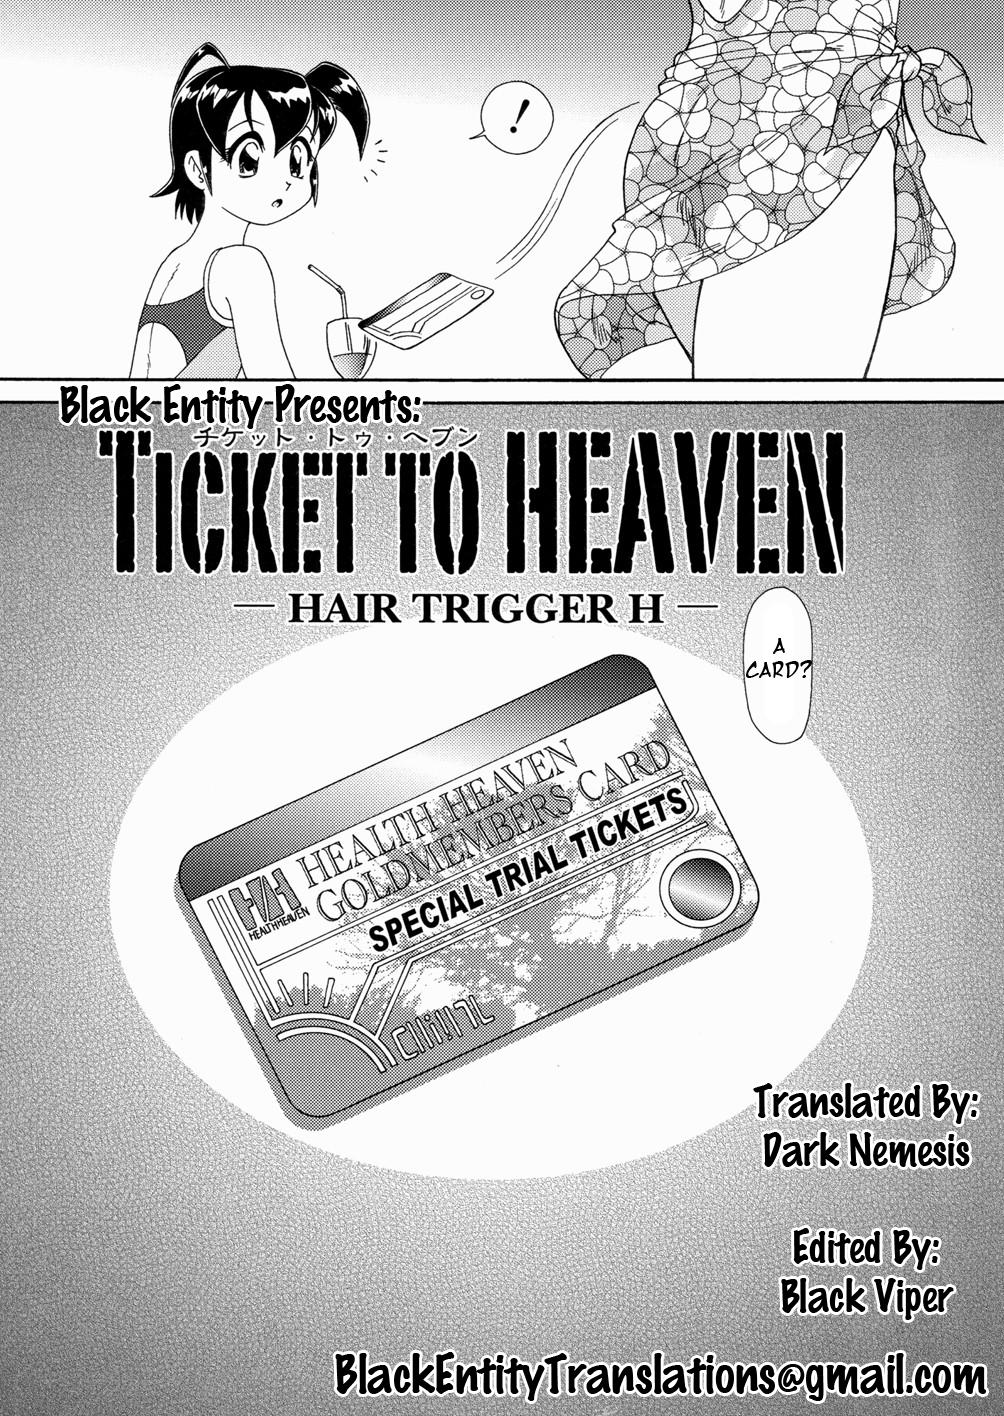 Ticket to Heaven Part 1 1